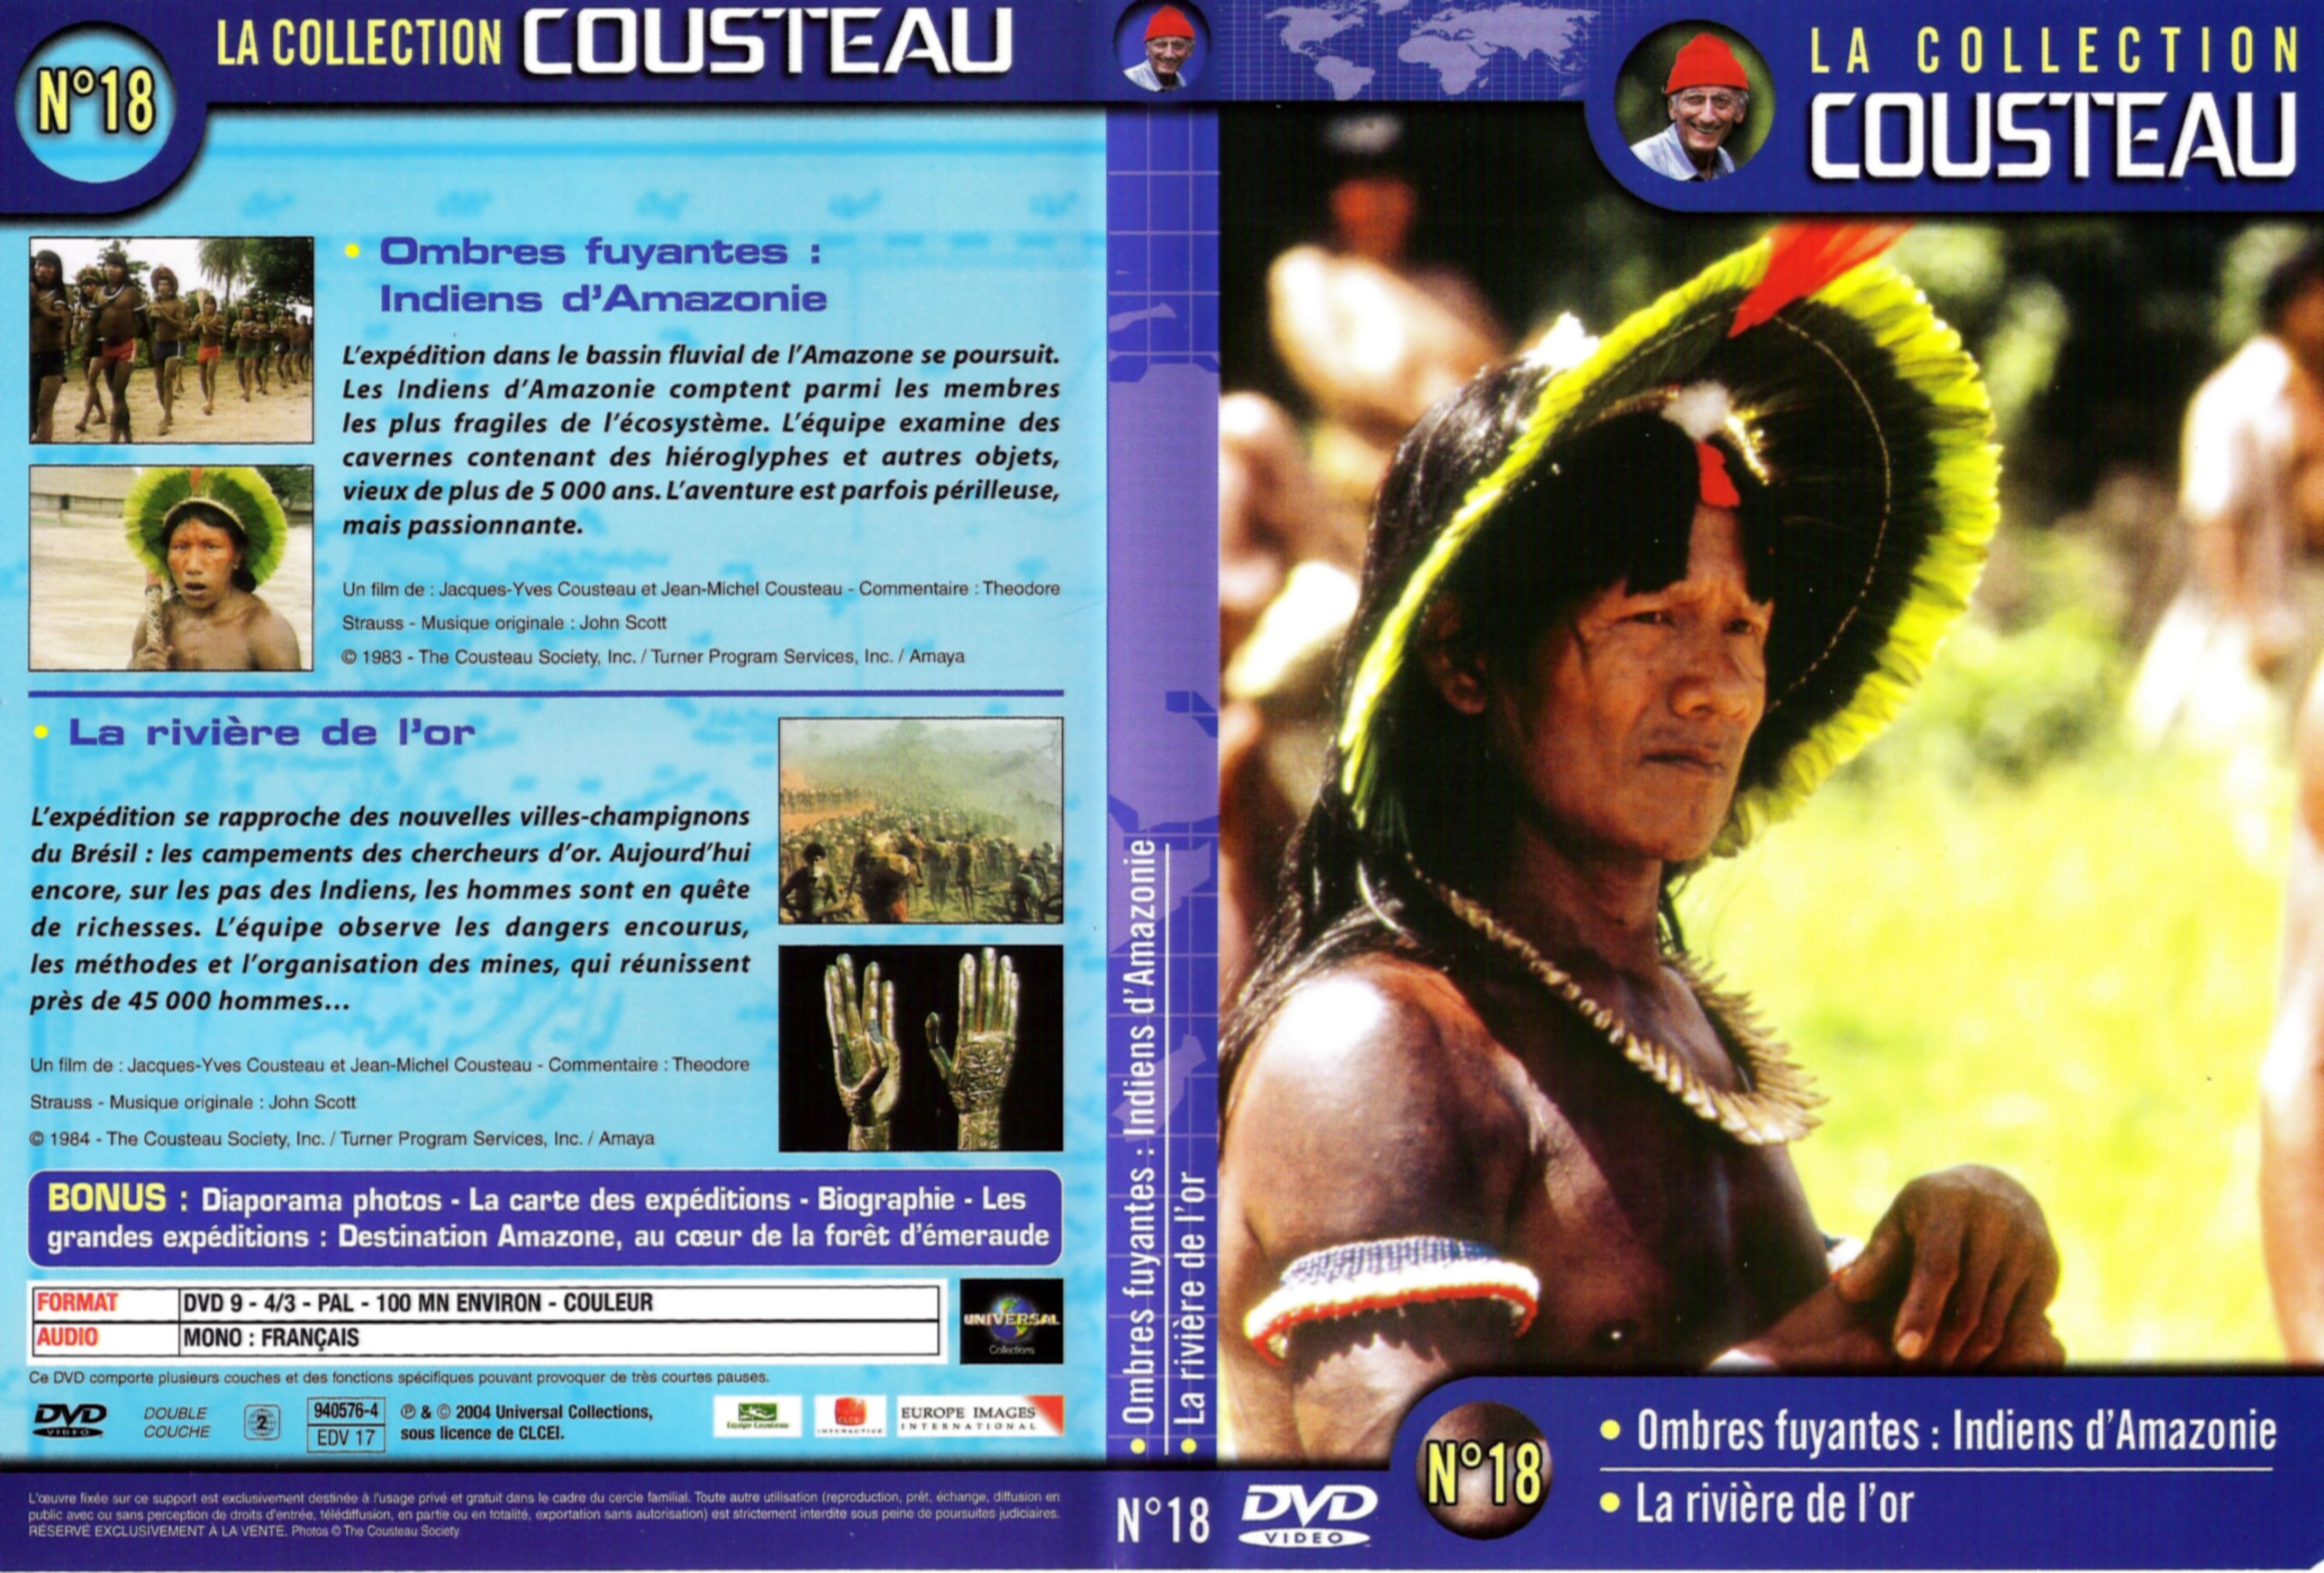 Jaquette DVD Cousteau Collection vol 18